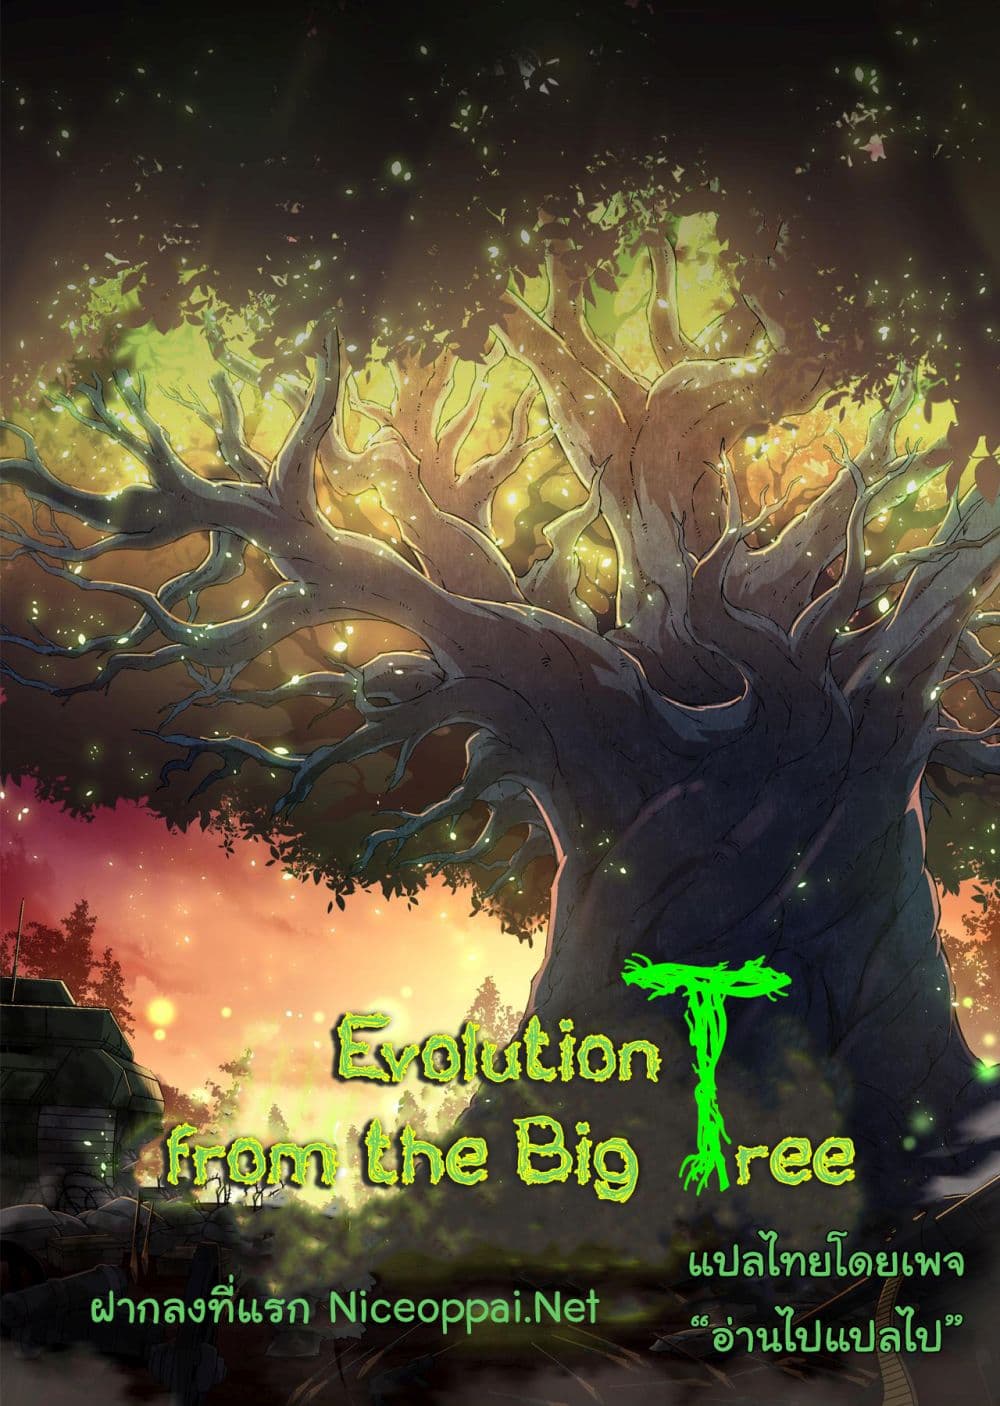 Evolution from the Big Tree Ã Â¸â€¢Ã Â¸Â­Ã Â¸â„¢Ã Â¸â€”Ã Â¸ÂµÃ Â¹Ë† 13 (1)